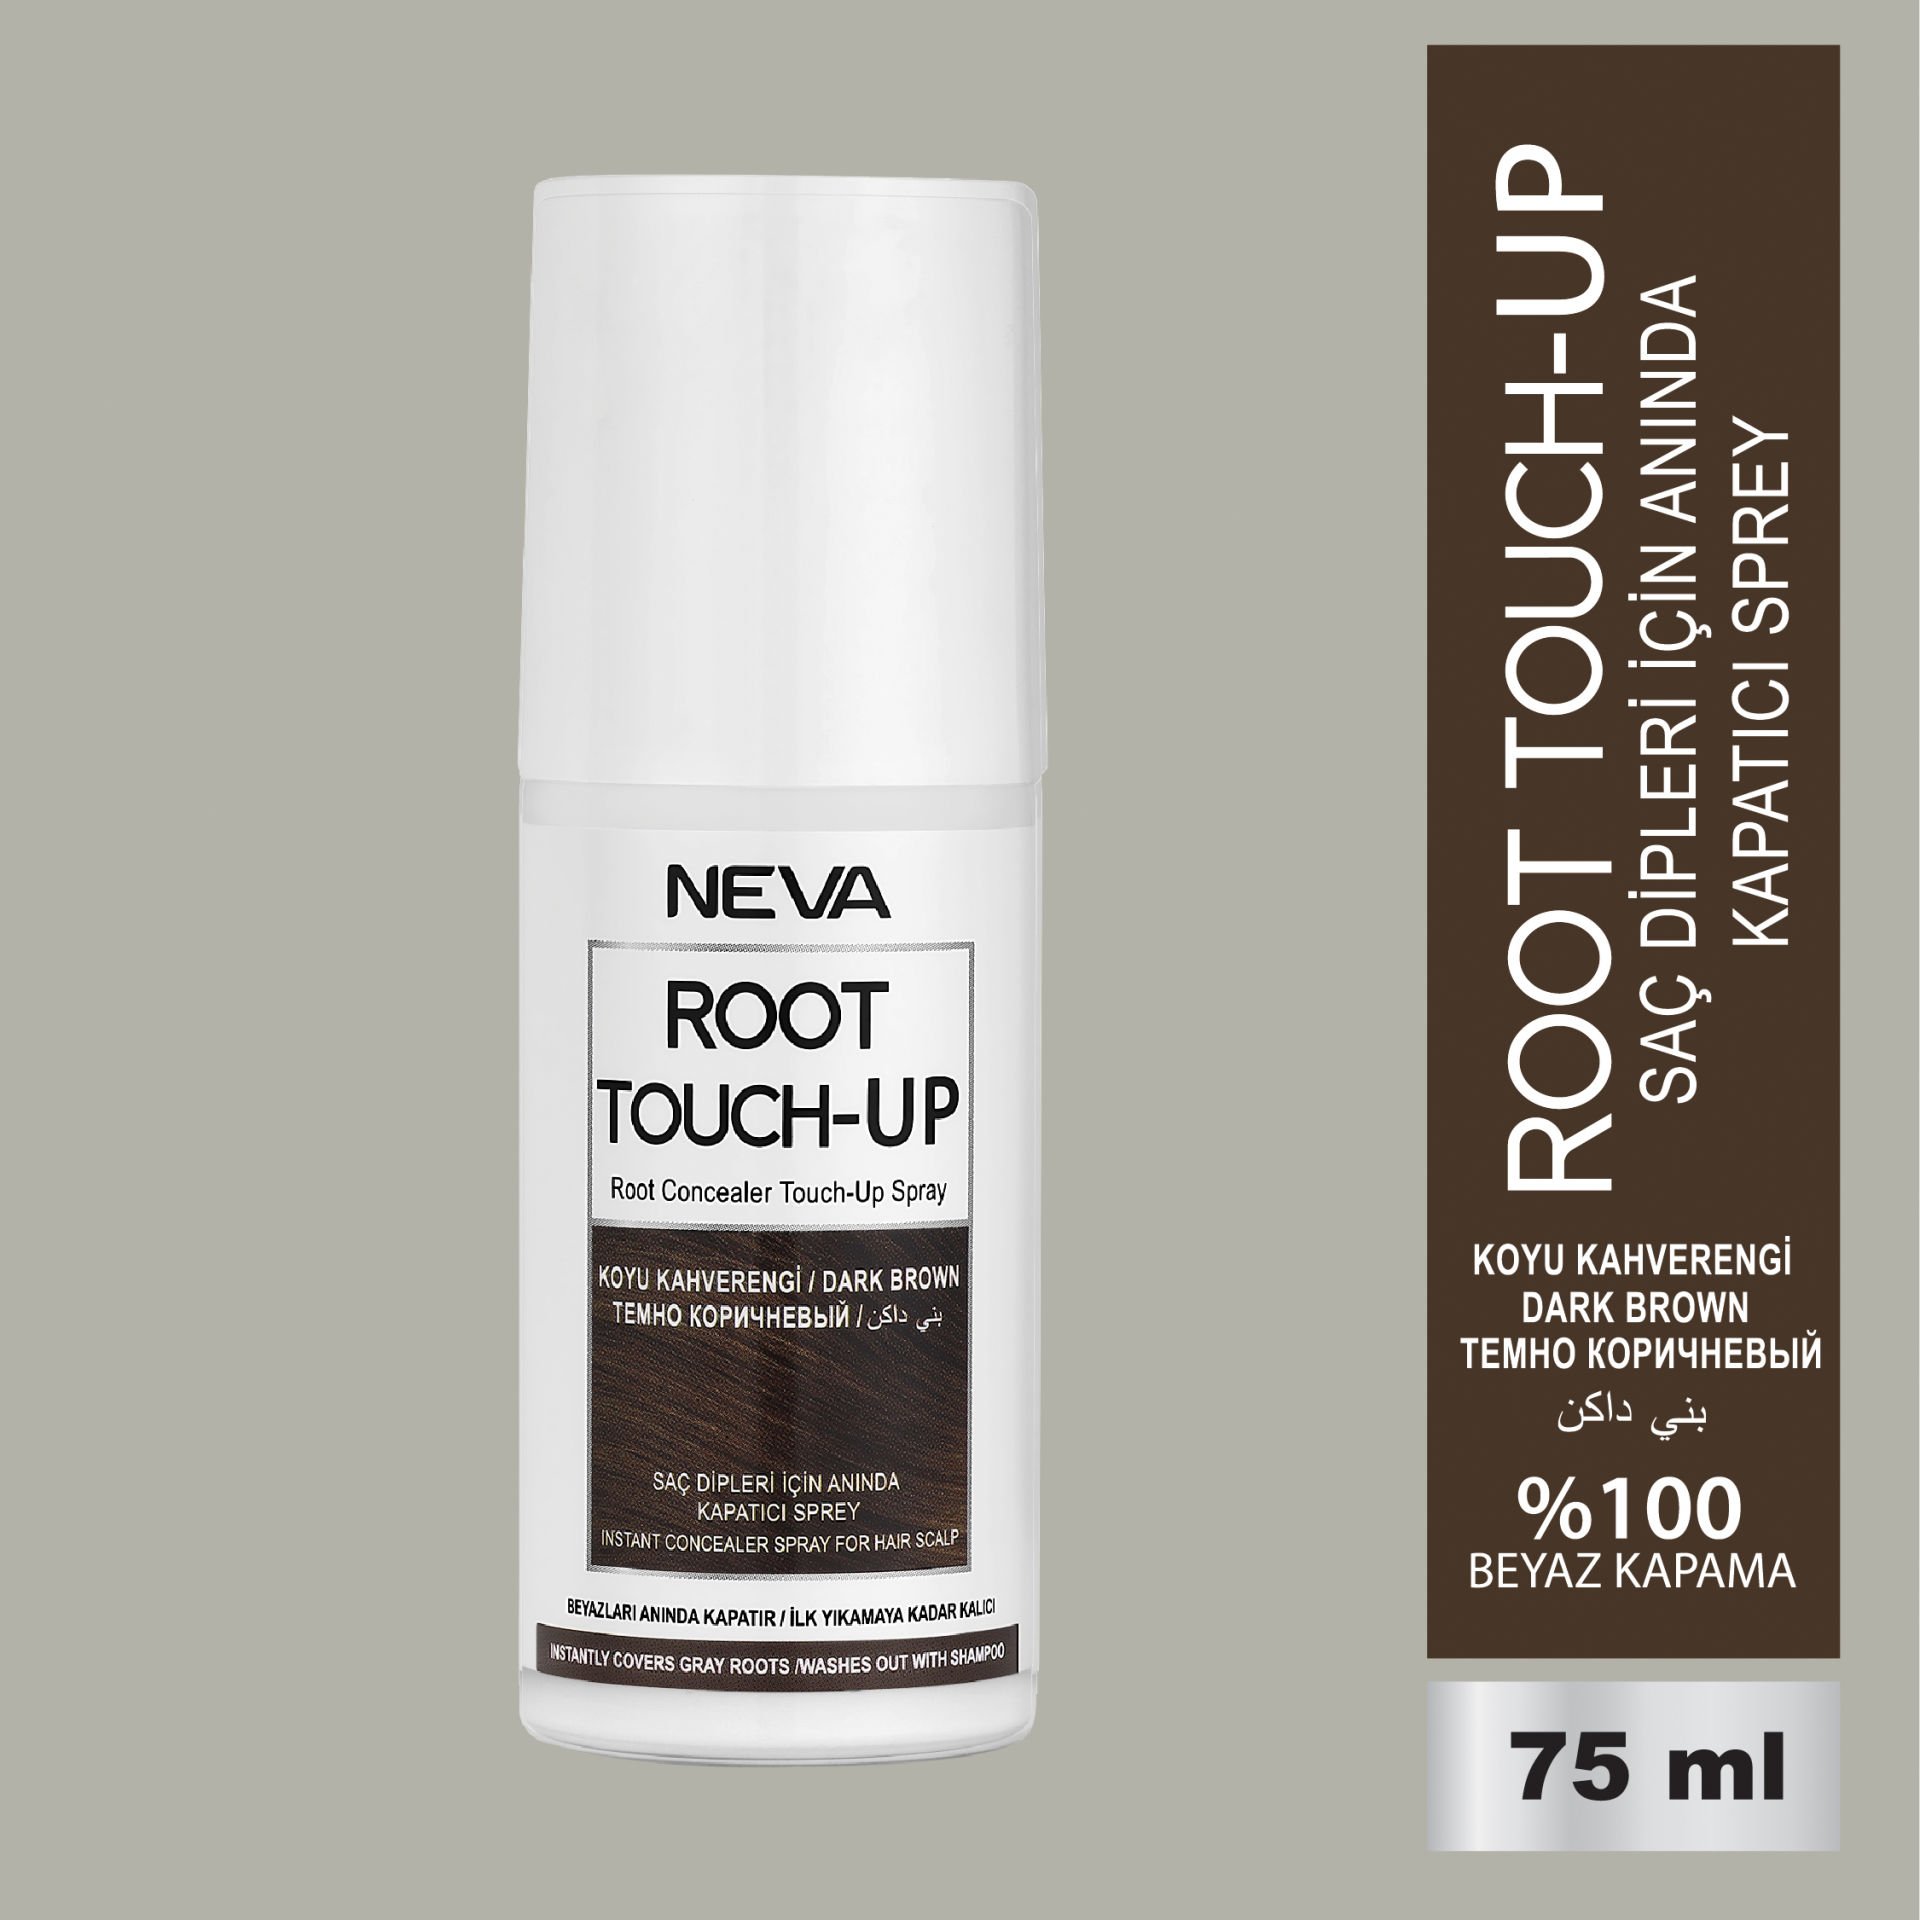 NEVA ROOT TOUCH-UP Saç Dipleri İçin Anında Kapatıcı Sprey- Koyu Kahverengi 75ml